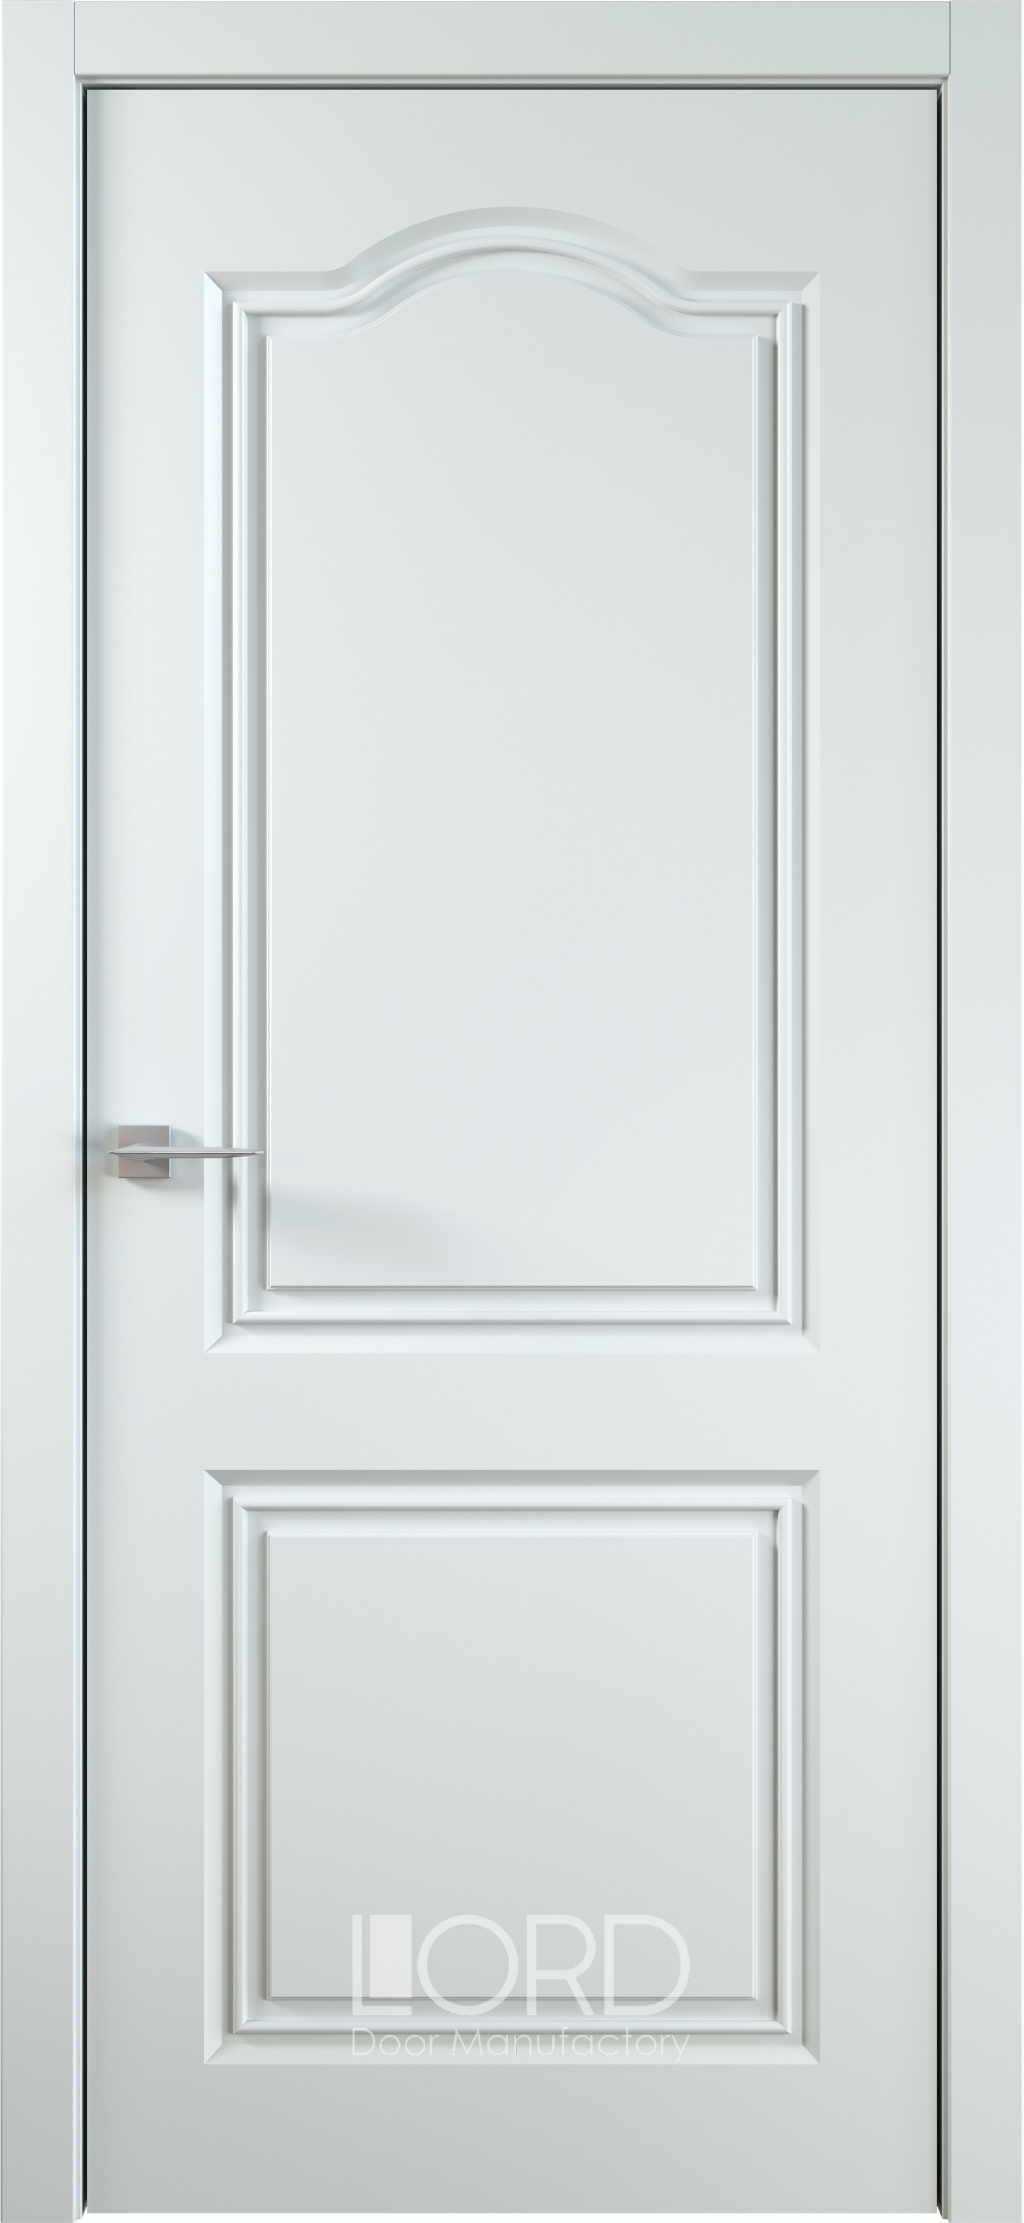 Лорд Межкомнатная дверь Ренессанс 6 ДГ, арт. 22993 - фото №1